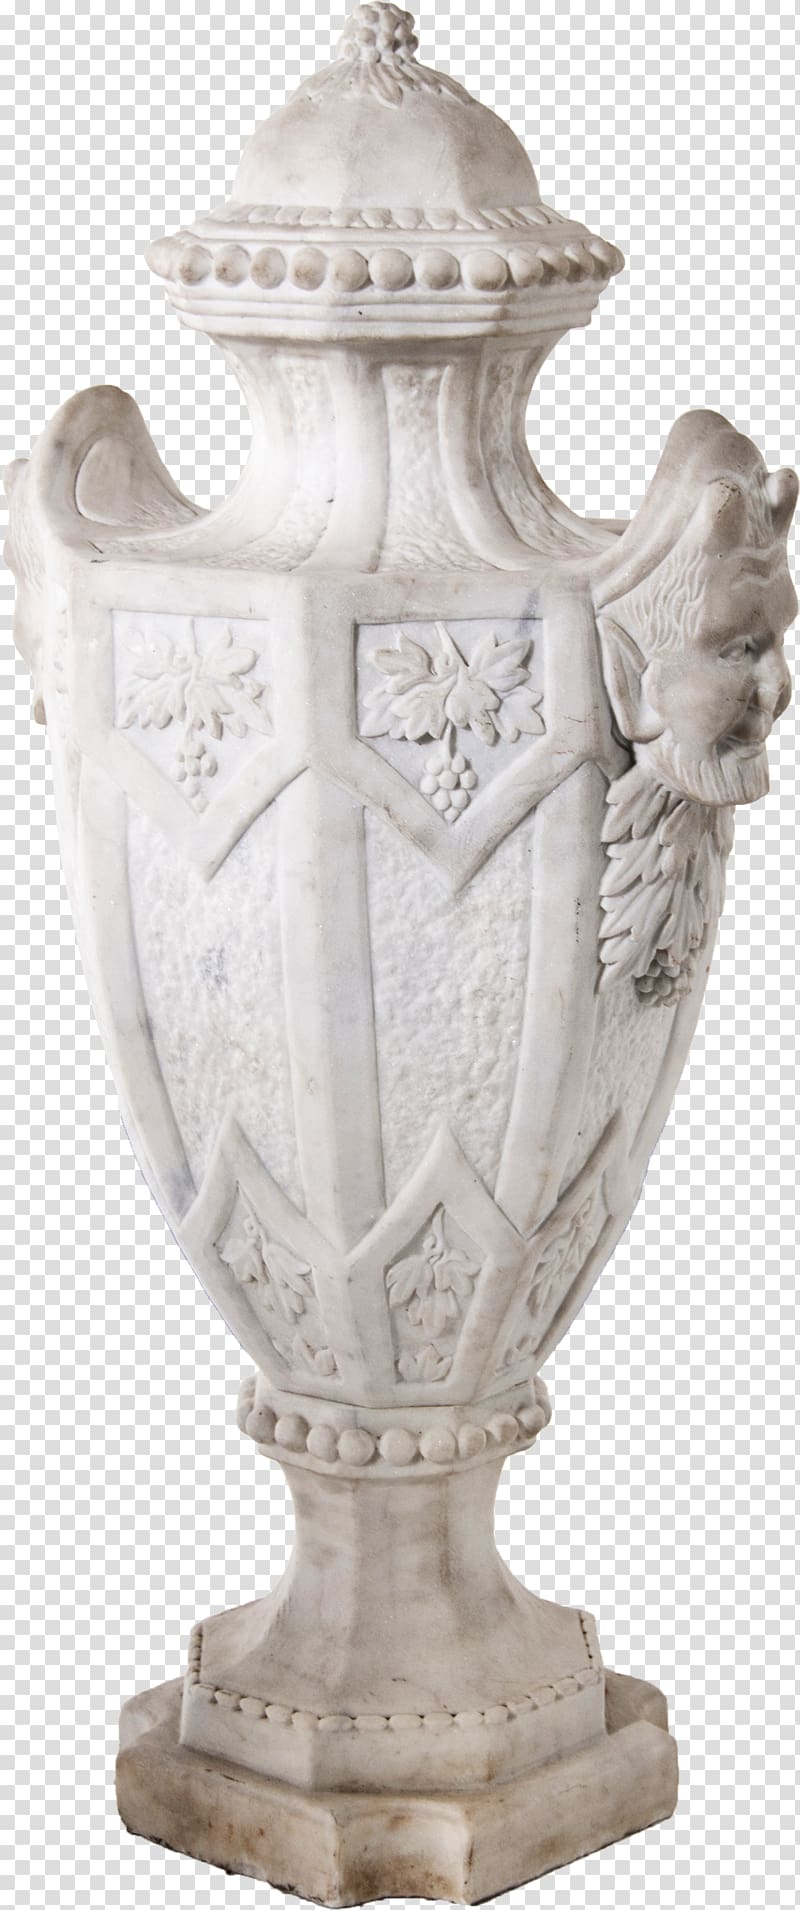 Vase Furniture Stone carving Ceramic, vase transparent background PNG clipart